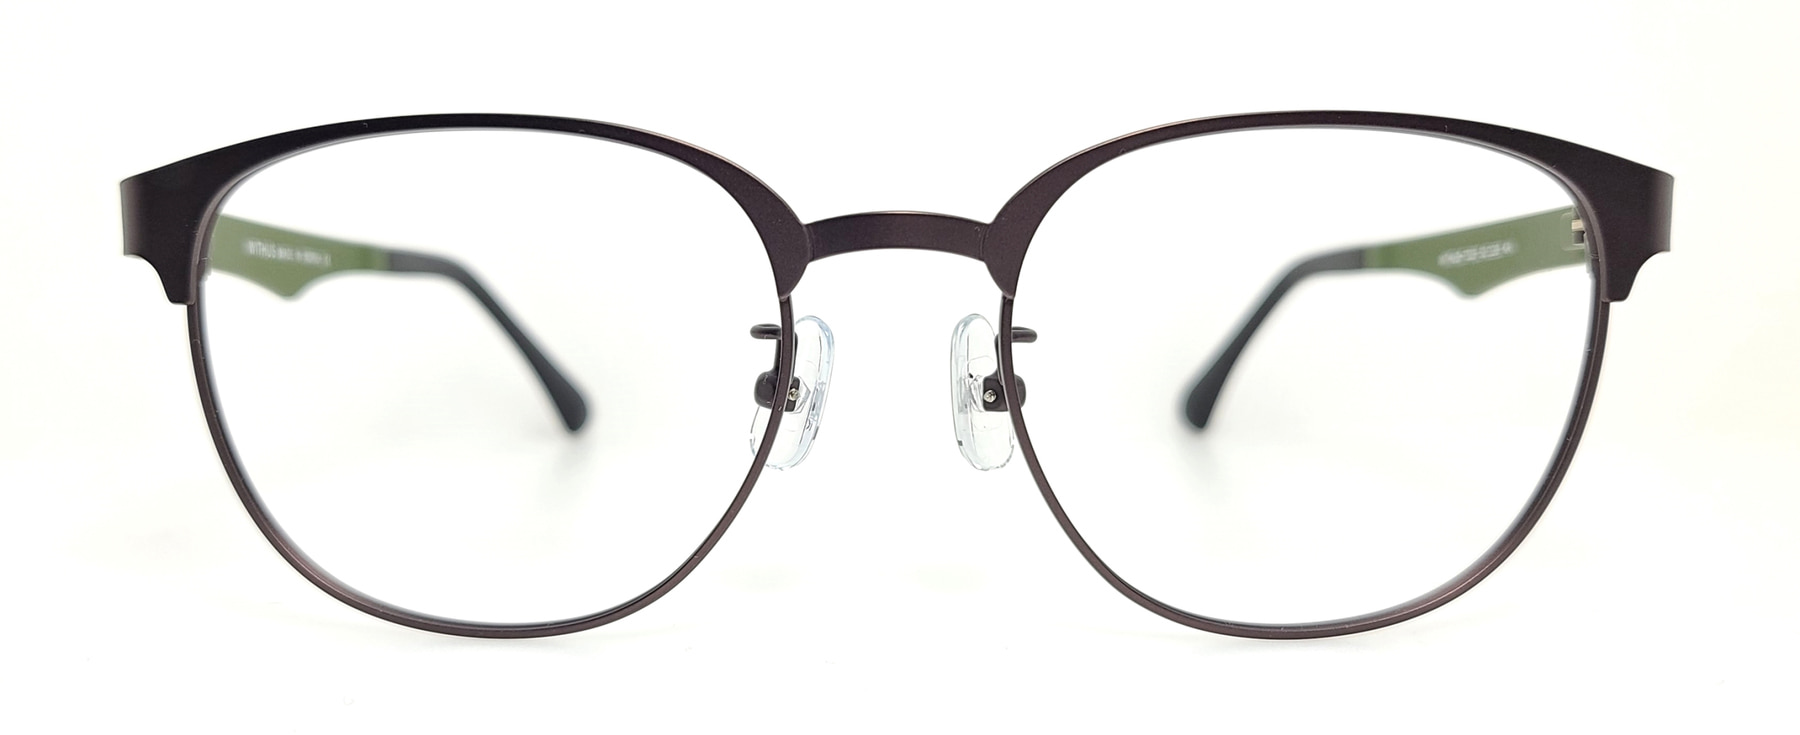 WITHUS-7323, Korean glasses, sunglasses, eyeglasses, glasses